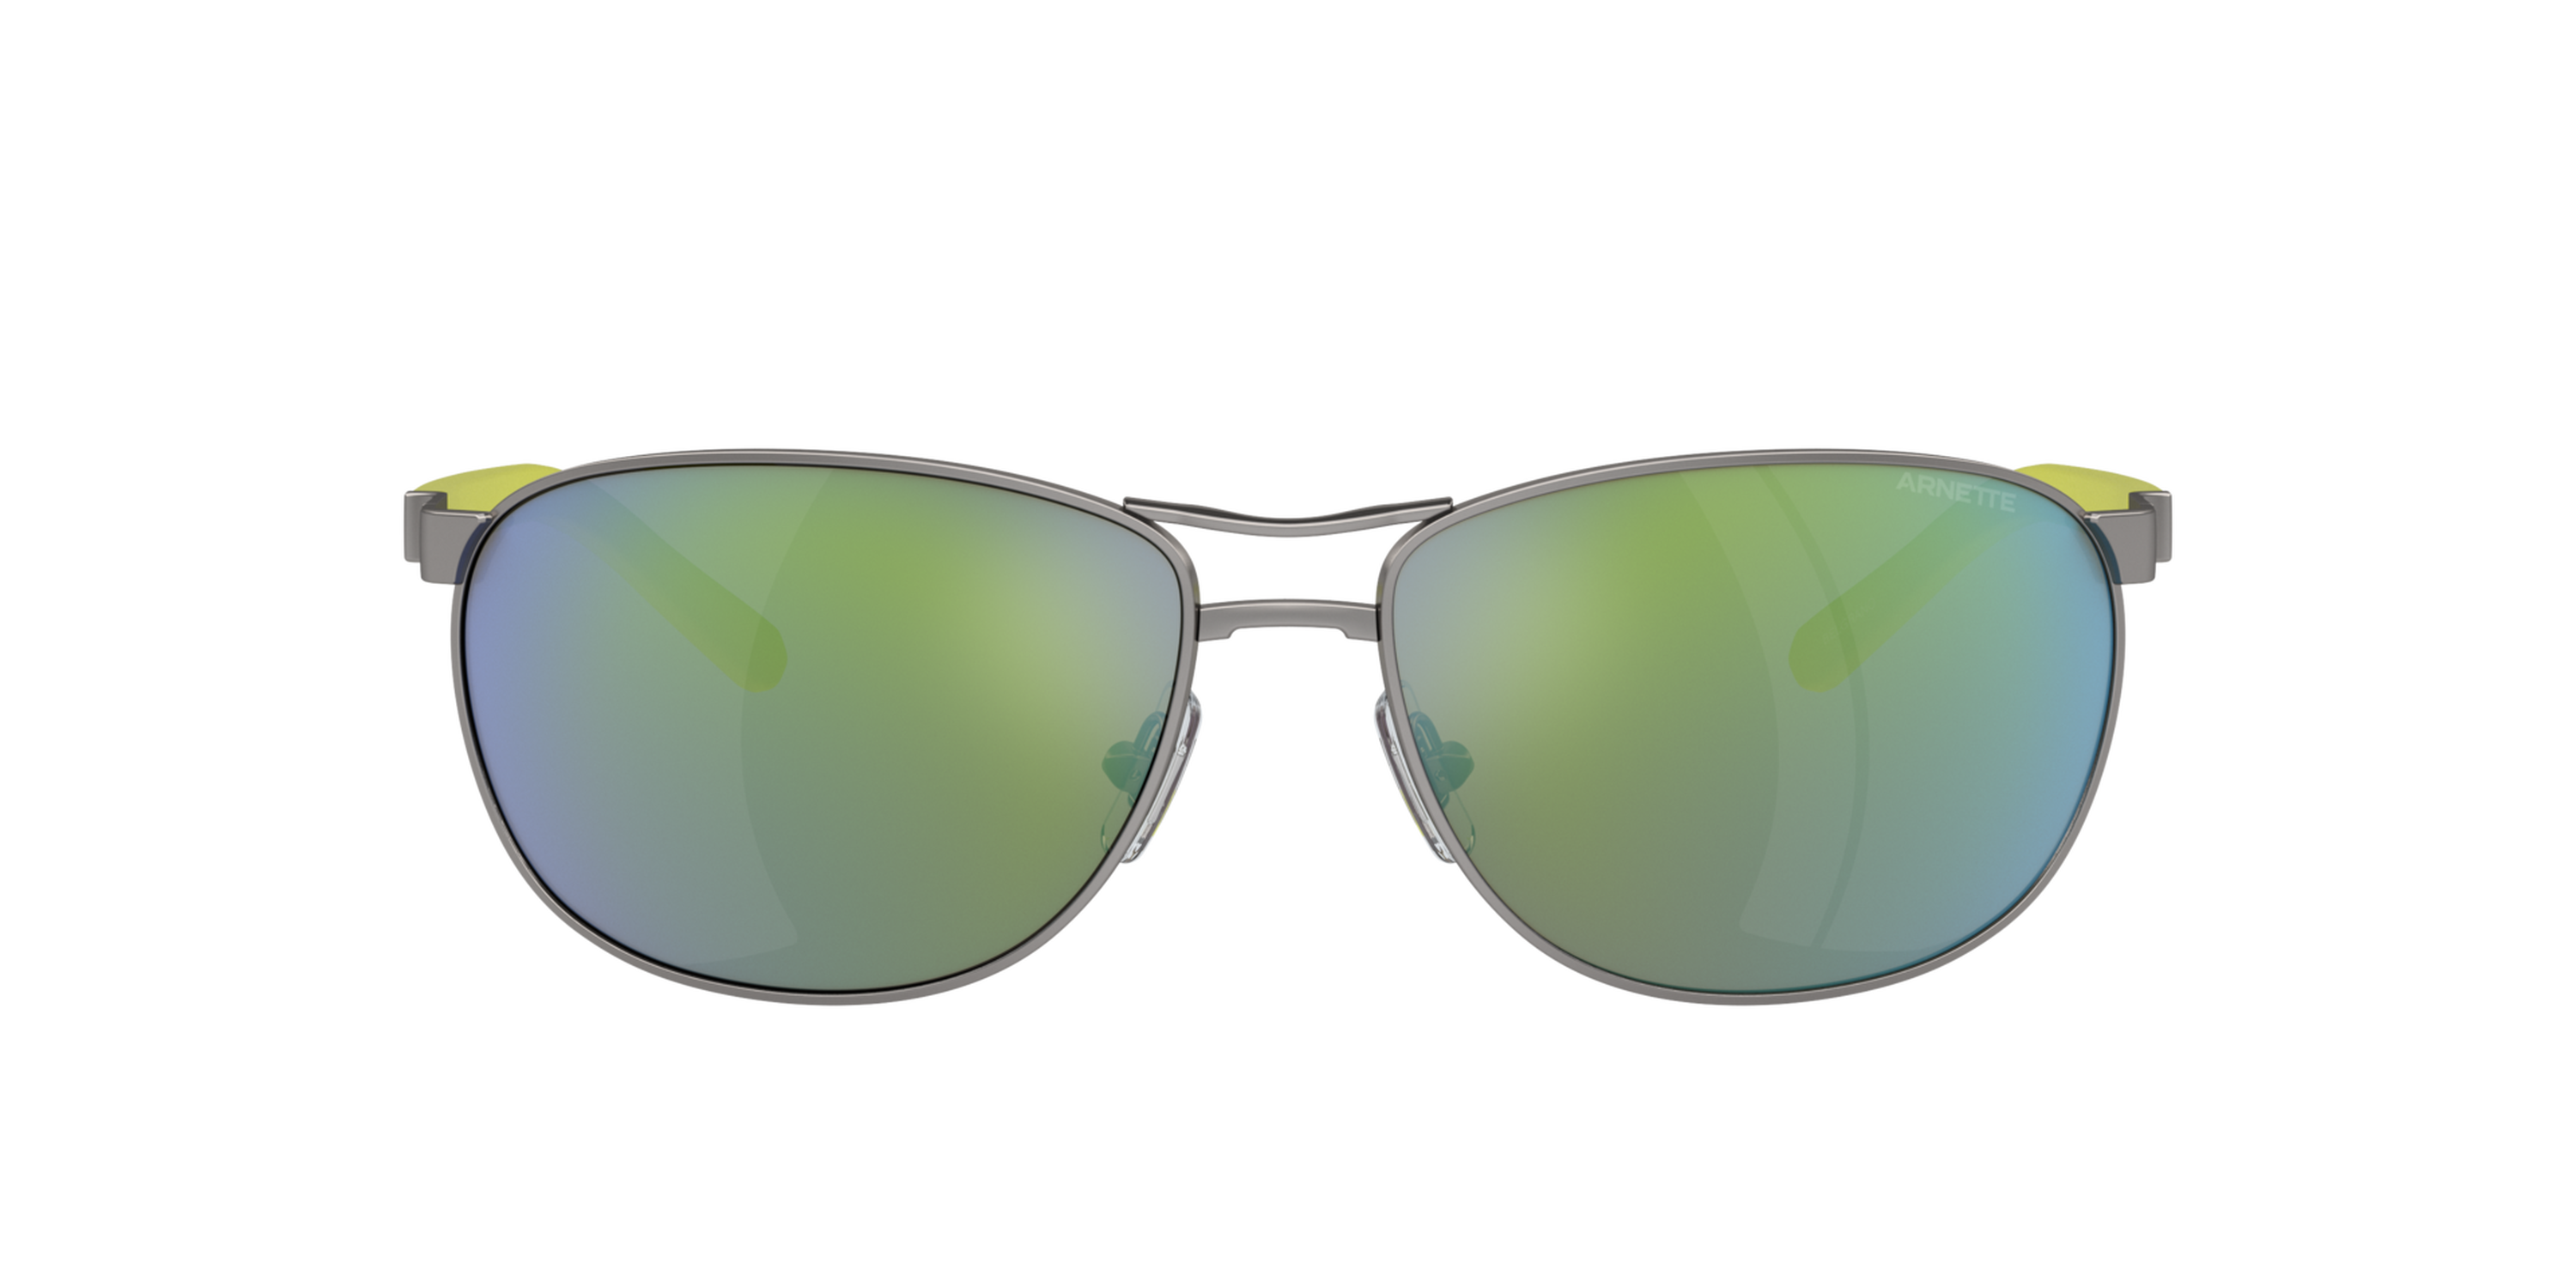 Das Bild zeigt die Sonnenbrille AN3090 745/8N von der Marke Arnette in gunmetal.